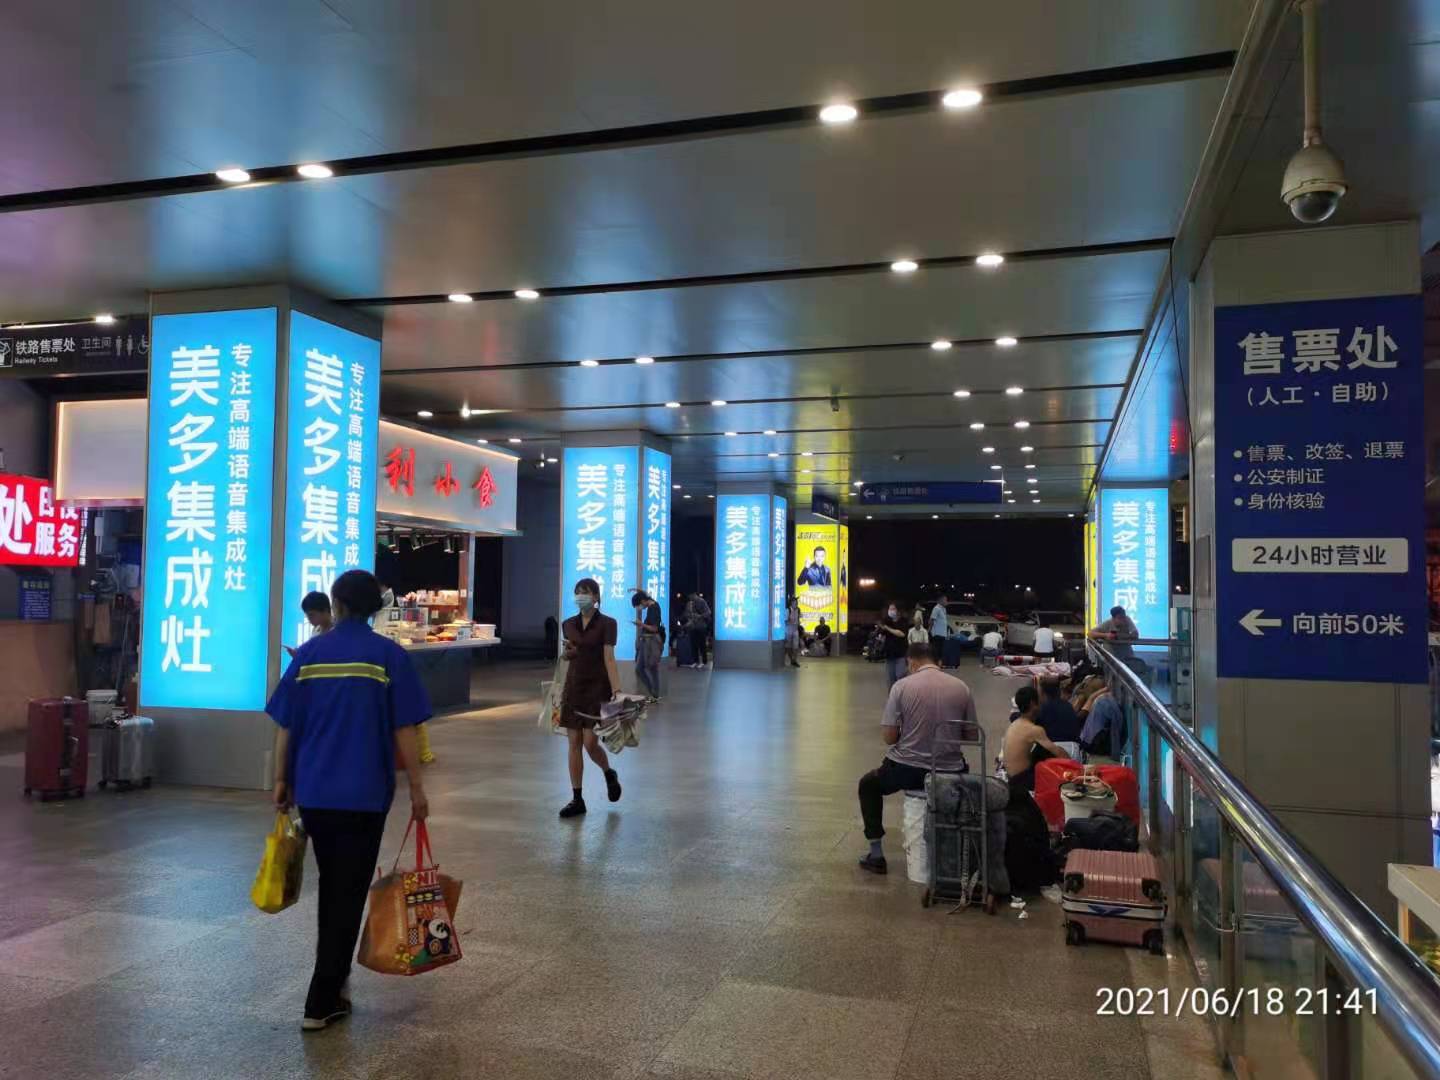 高铁站掀起"美多风",美多语音集成灶又强势登陆杭州站